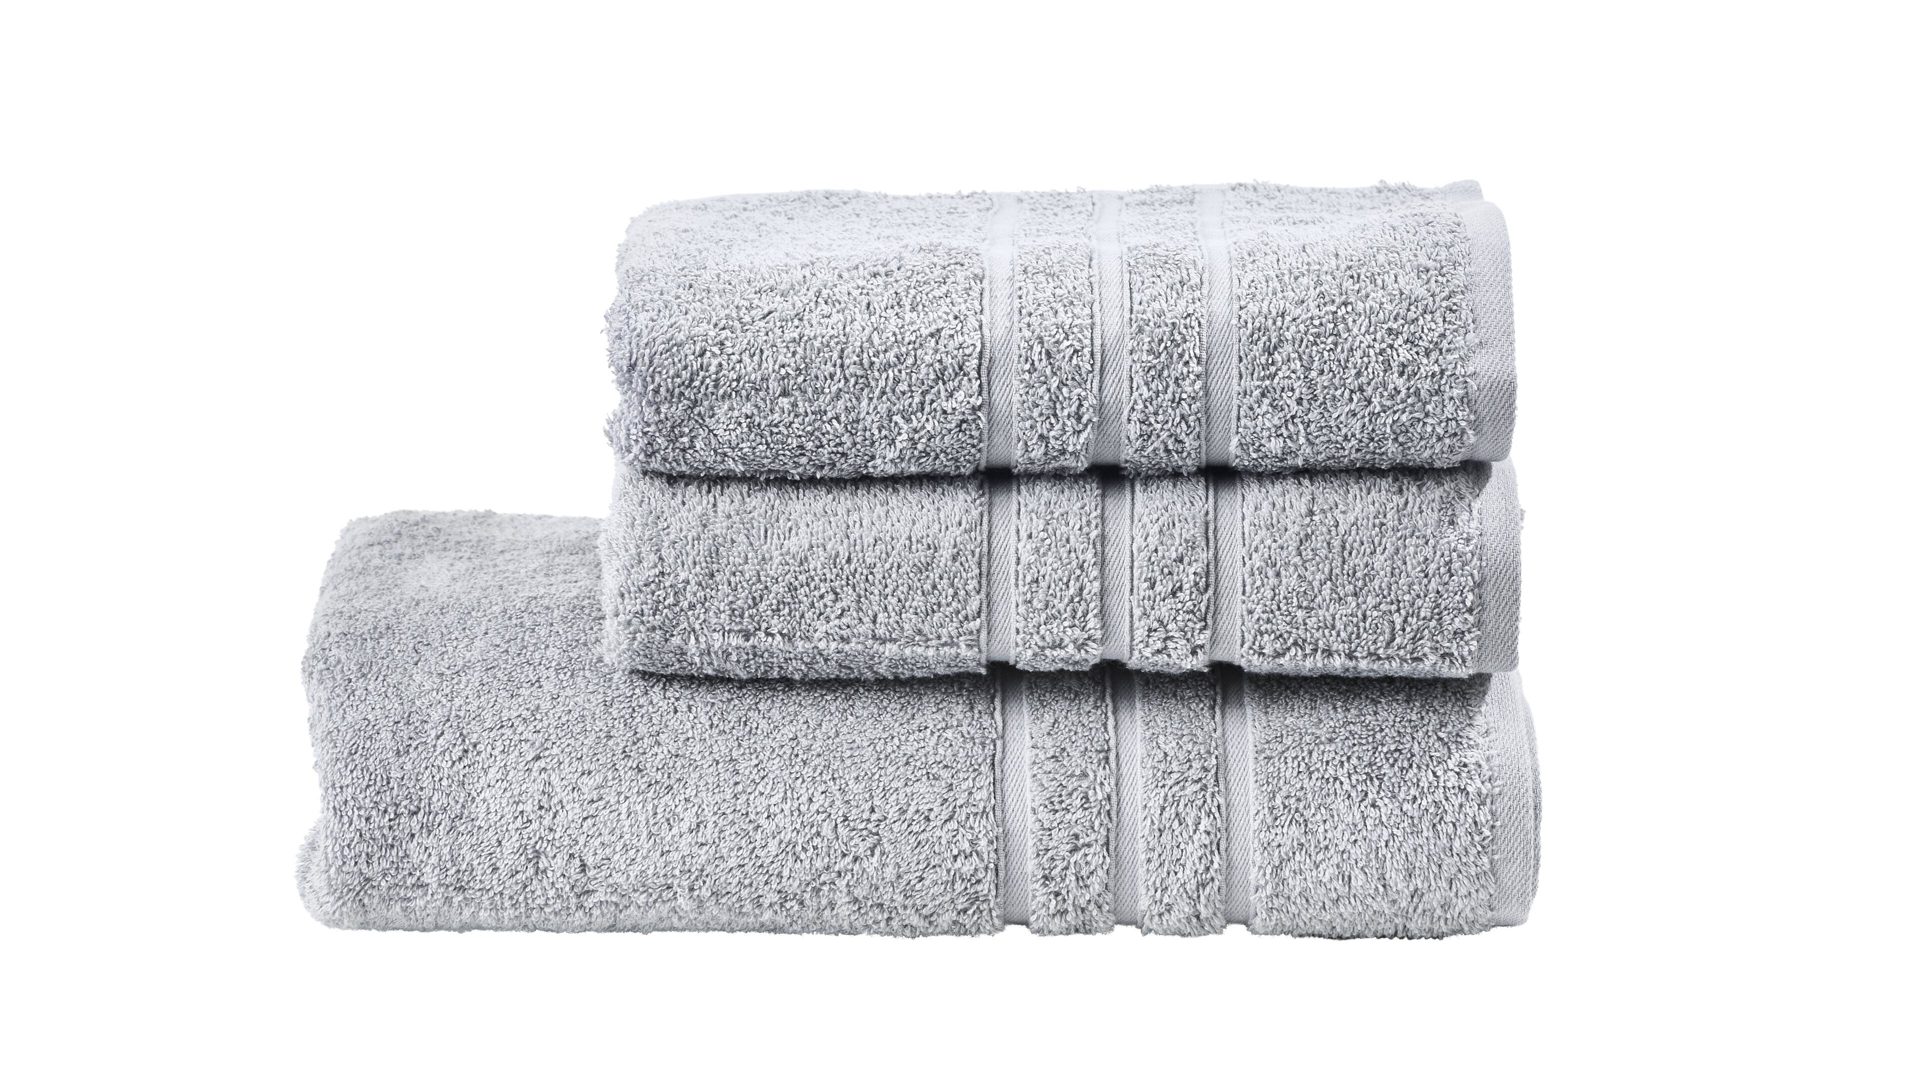 Handtuch-Set Done® by karabel home company aus Stoff in Hellgrau DONE® Handtuch-Set Daily Uni silberfarbene Baumwolle – dreiteilig